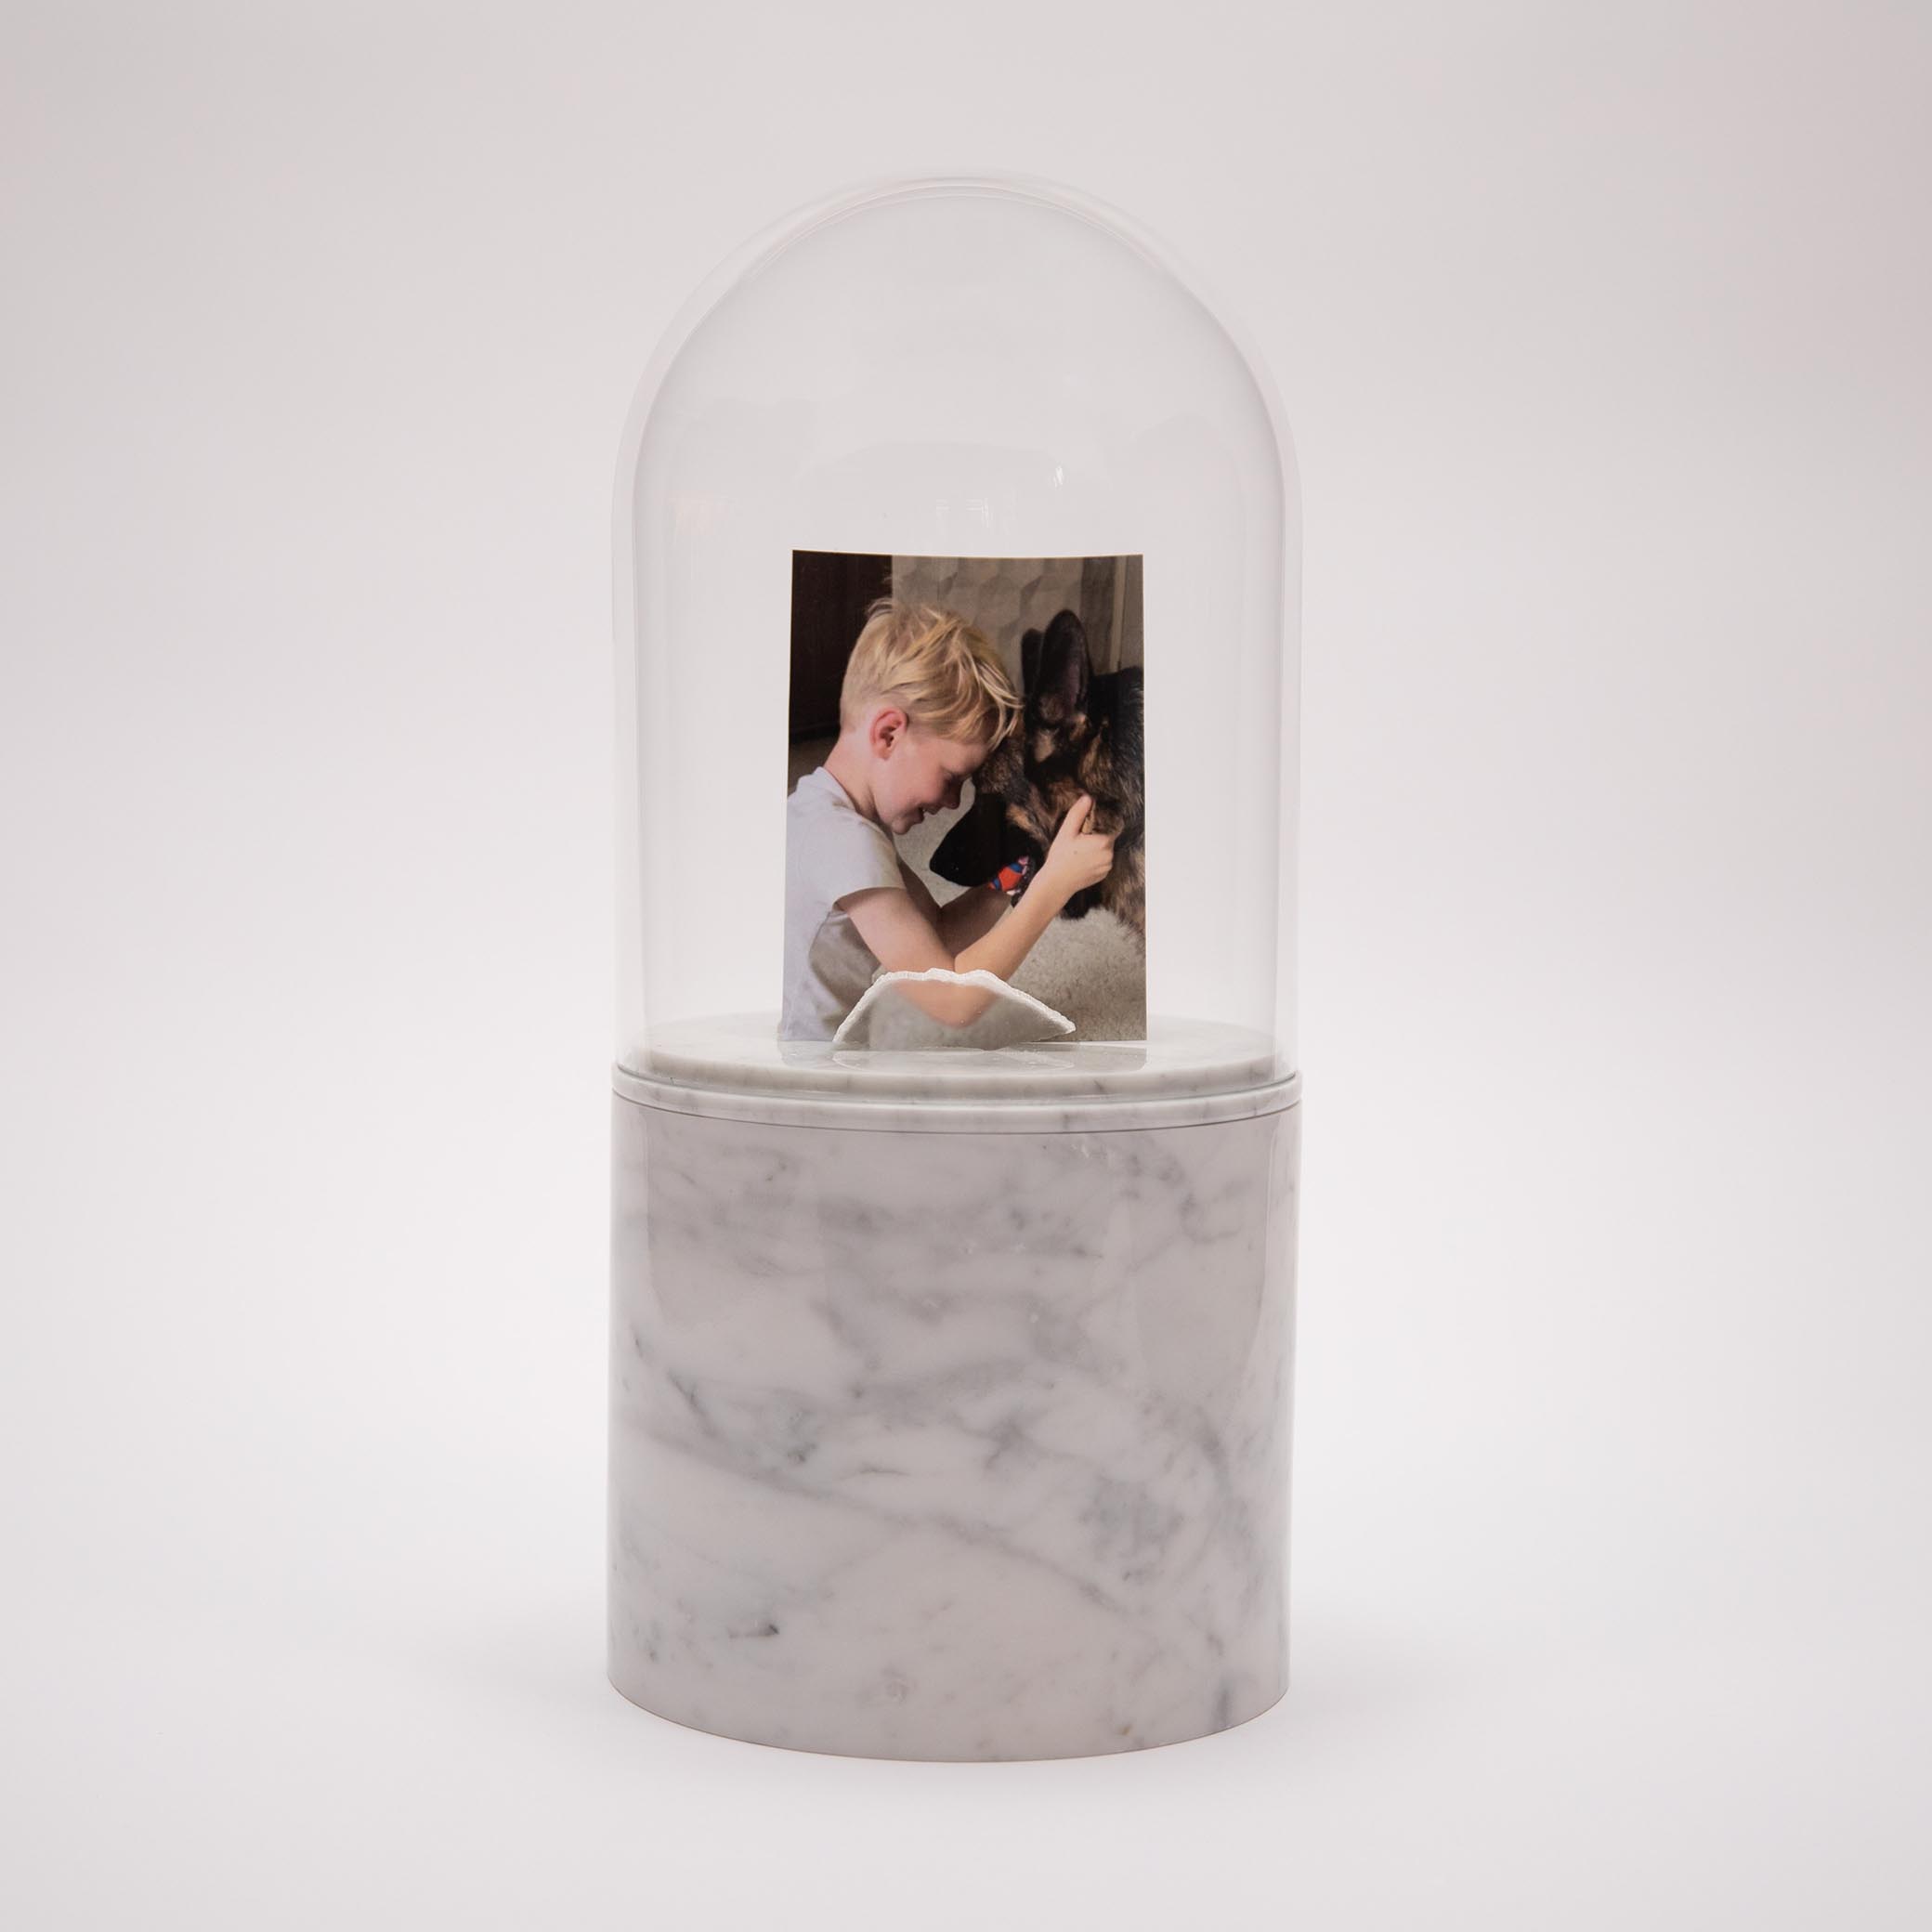 Marmeren urn 3 liter met glazen stolp en persoonlijke foto